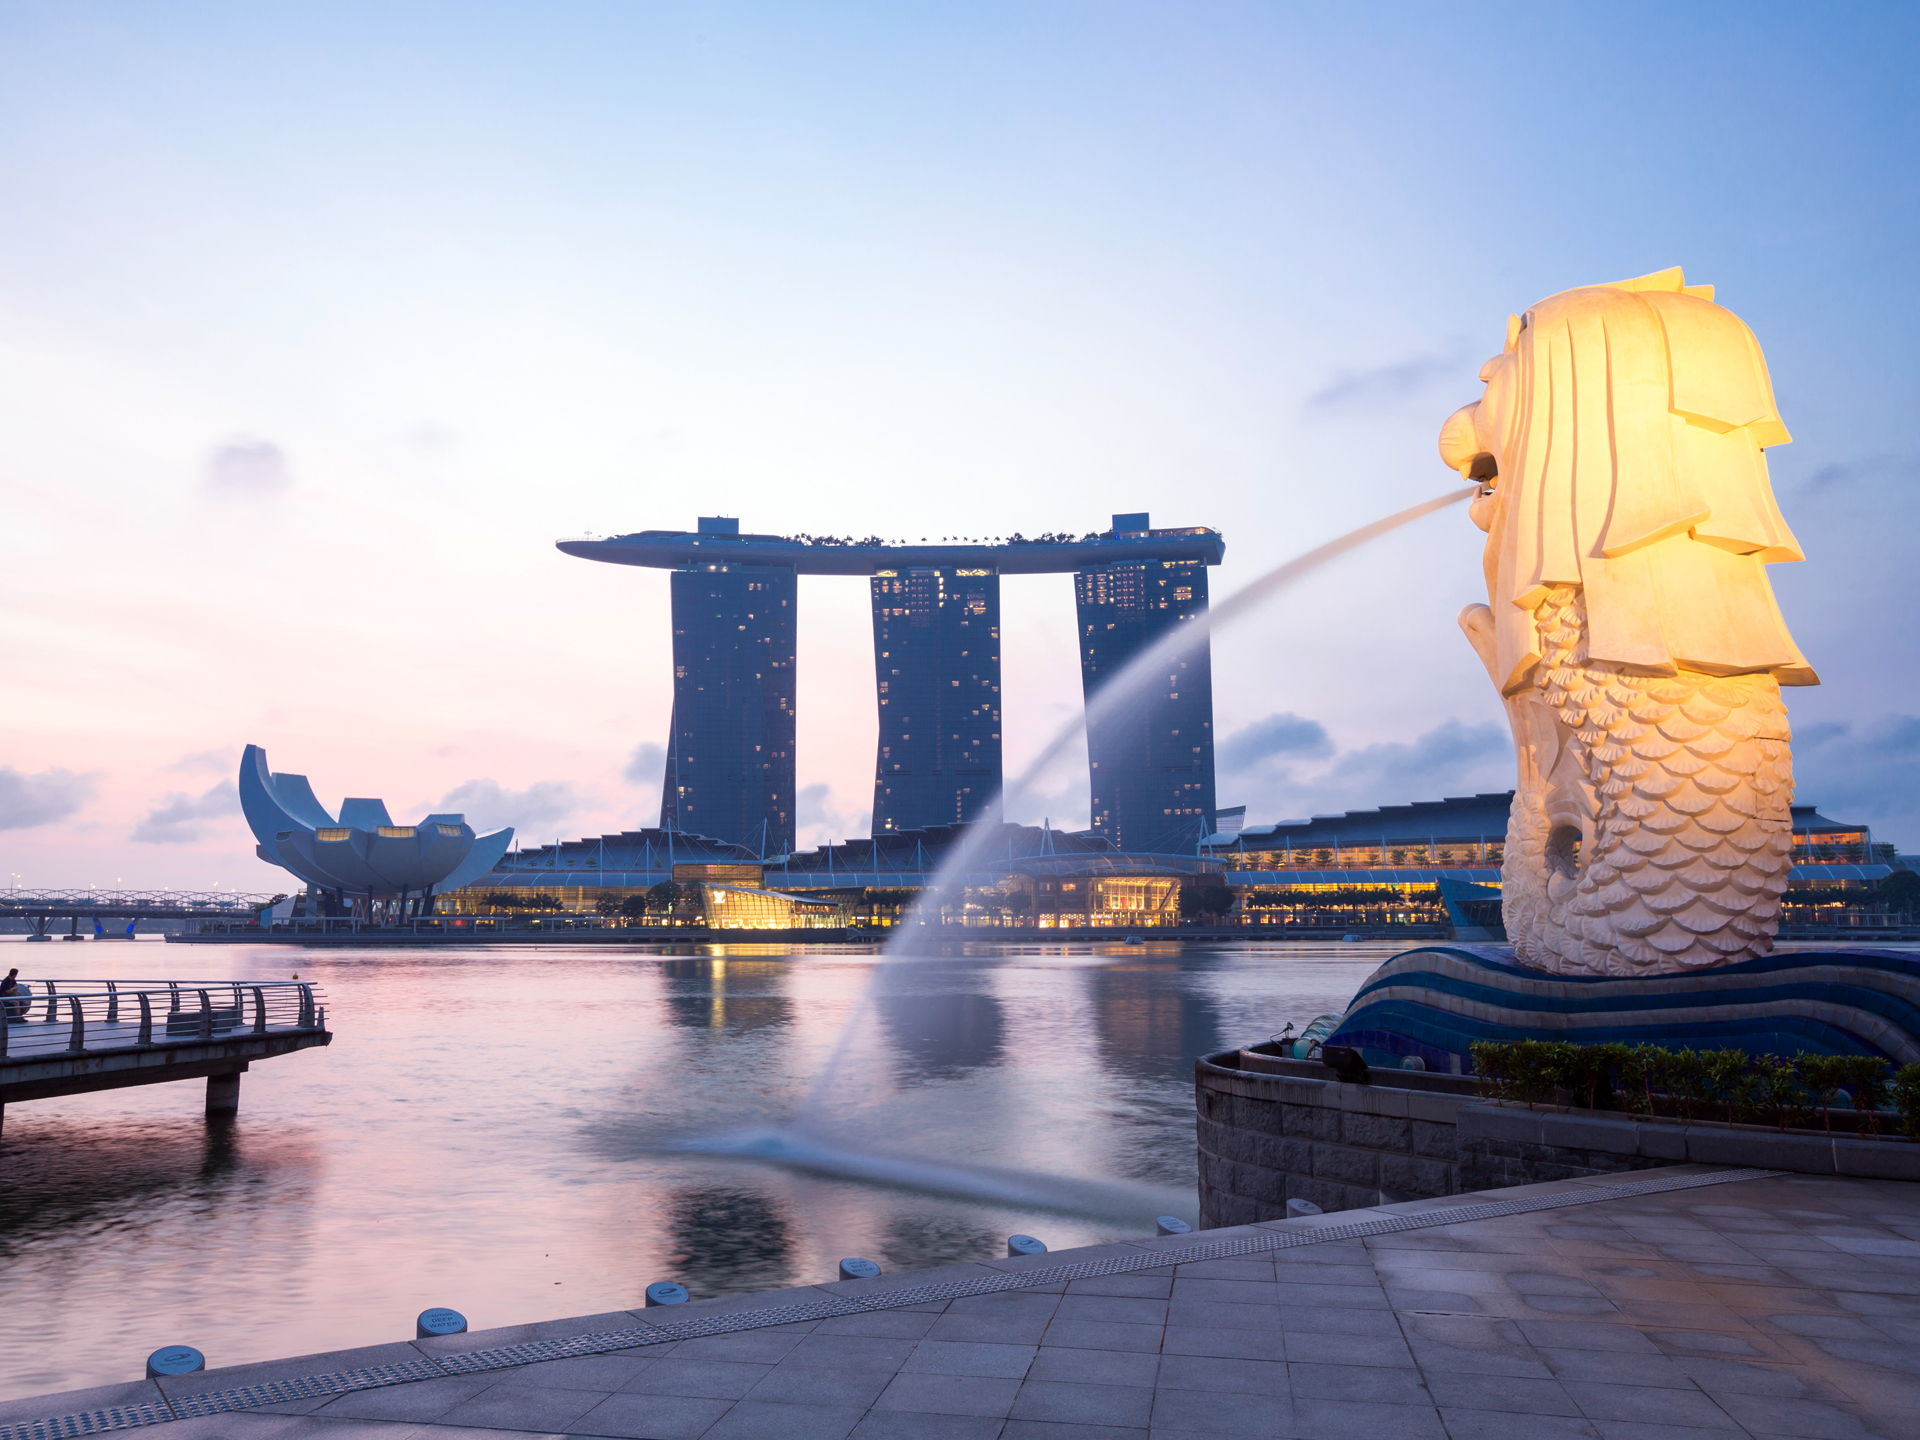 新加坡6日游,新加坡6日游费用-中青旅遨游网